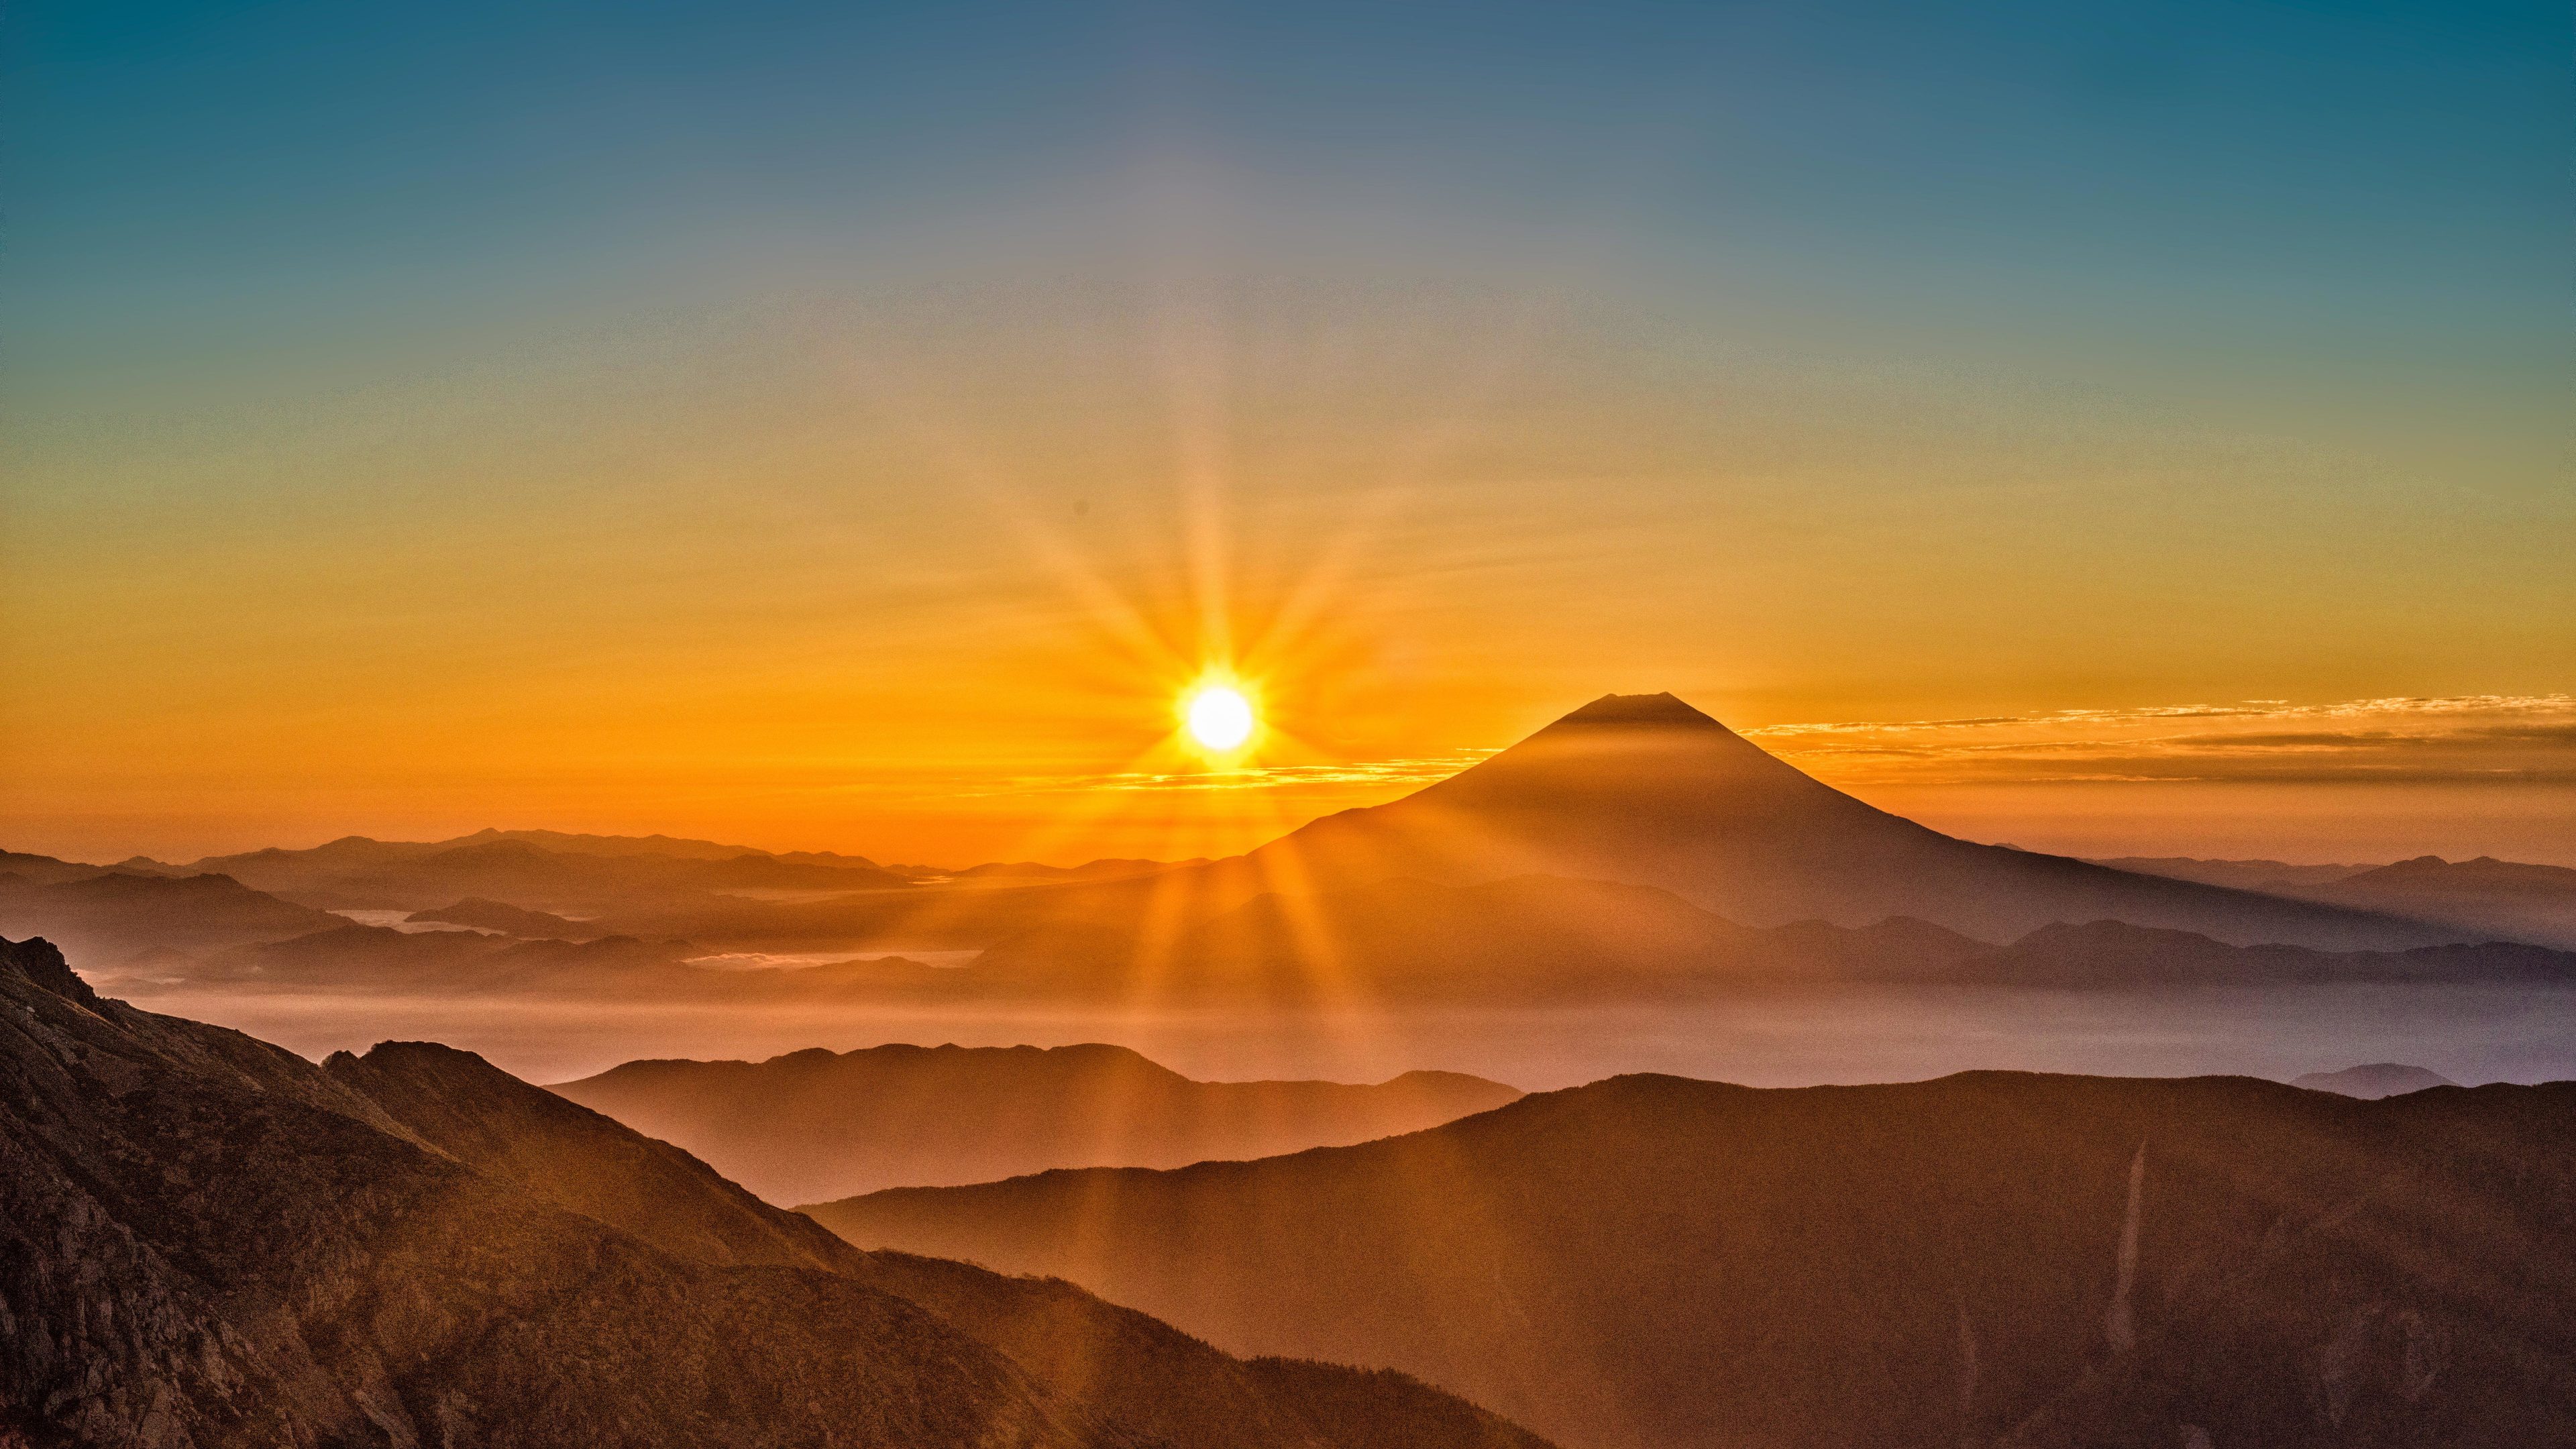 Mount Fuji Morning Sun Rising 4k - Leaves Ben And Ben Lyrics , HD Wallpaper & Backgrounds